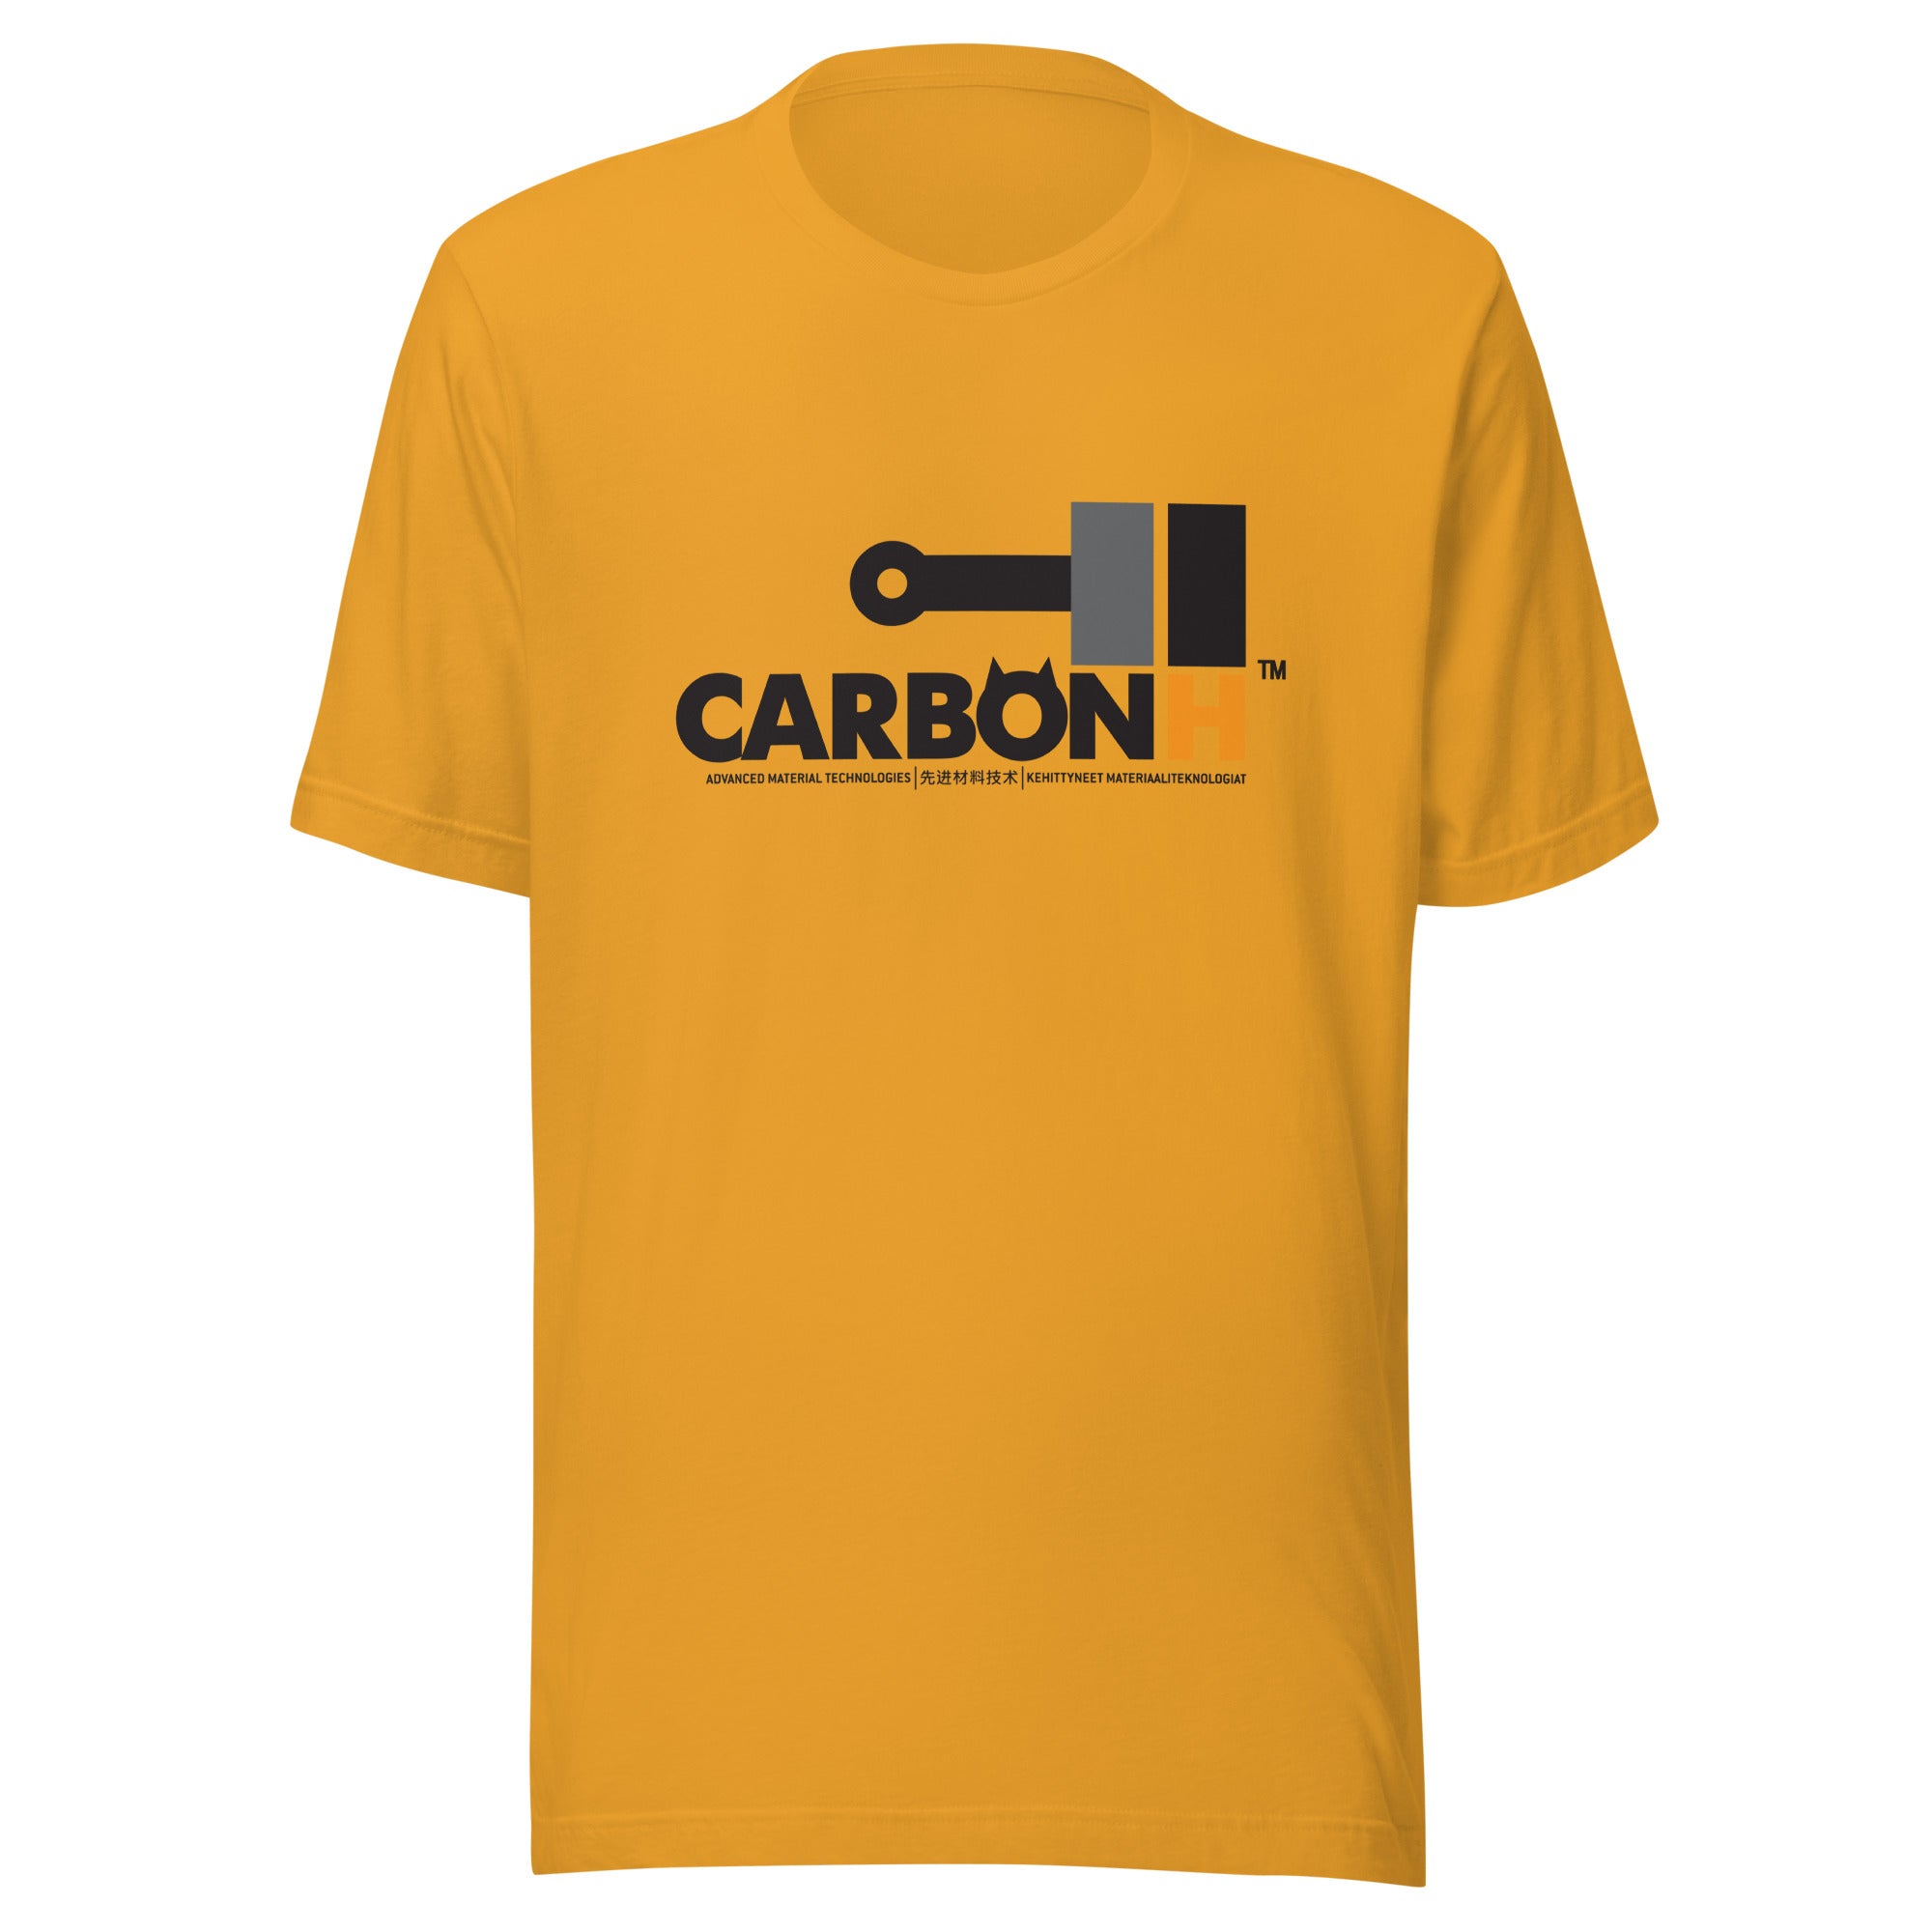 CARBONH | T-shirt | Bella + Canvas